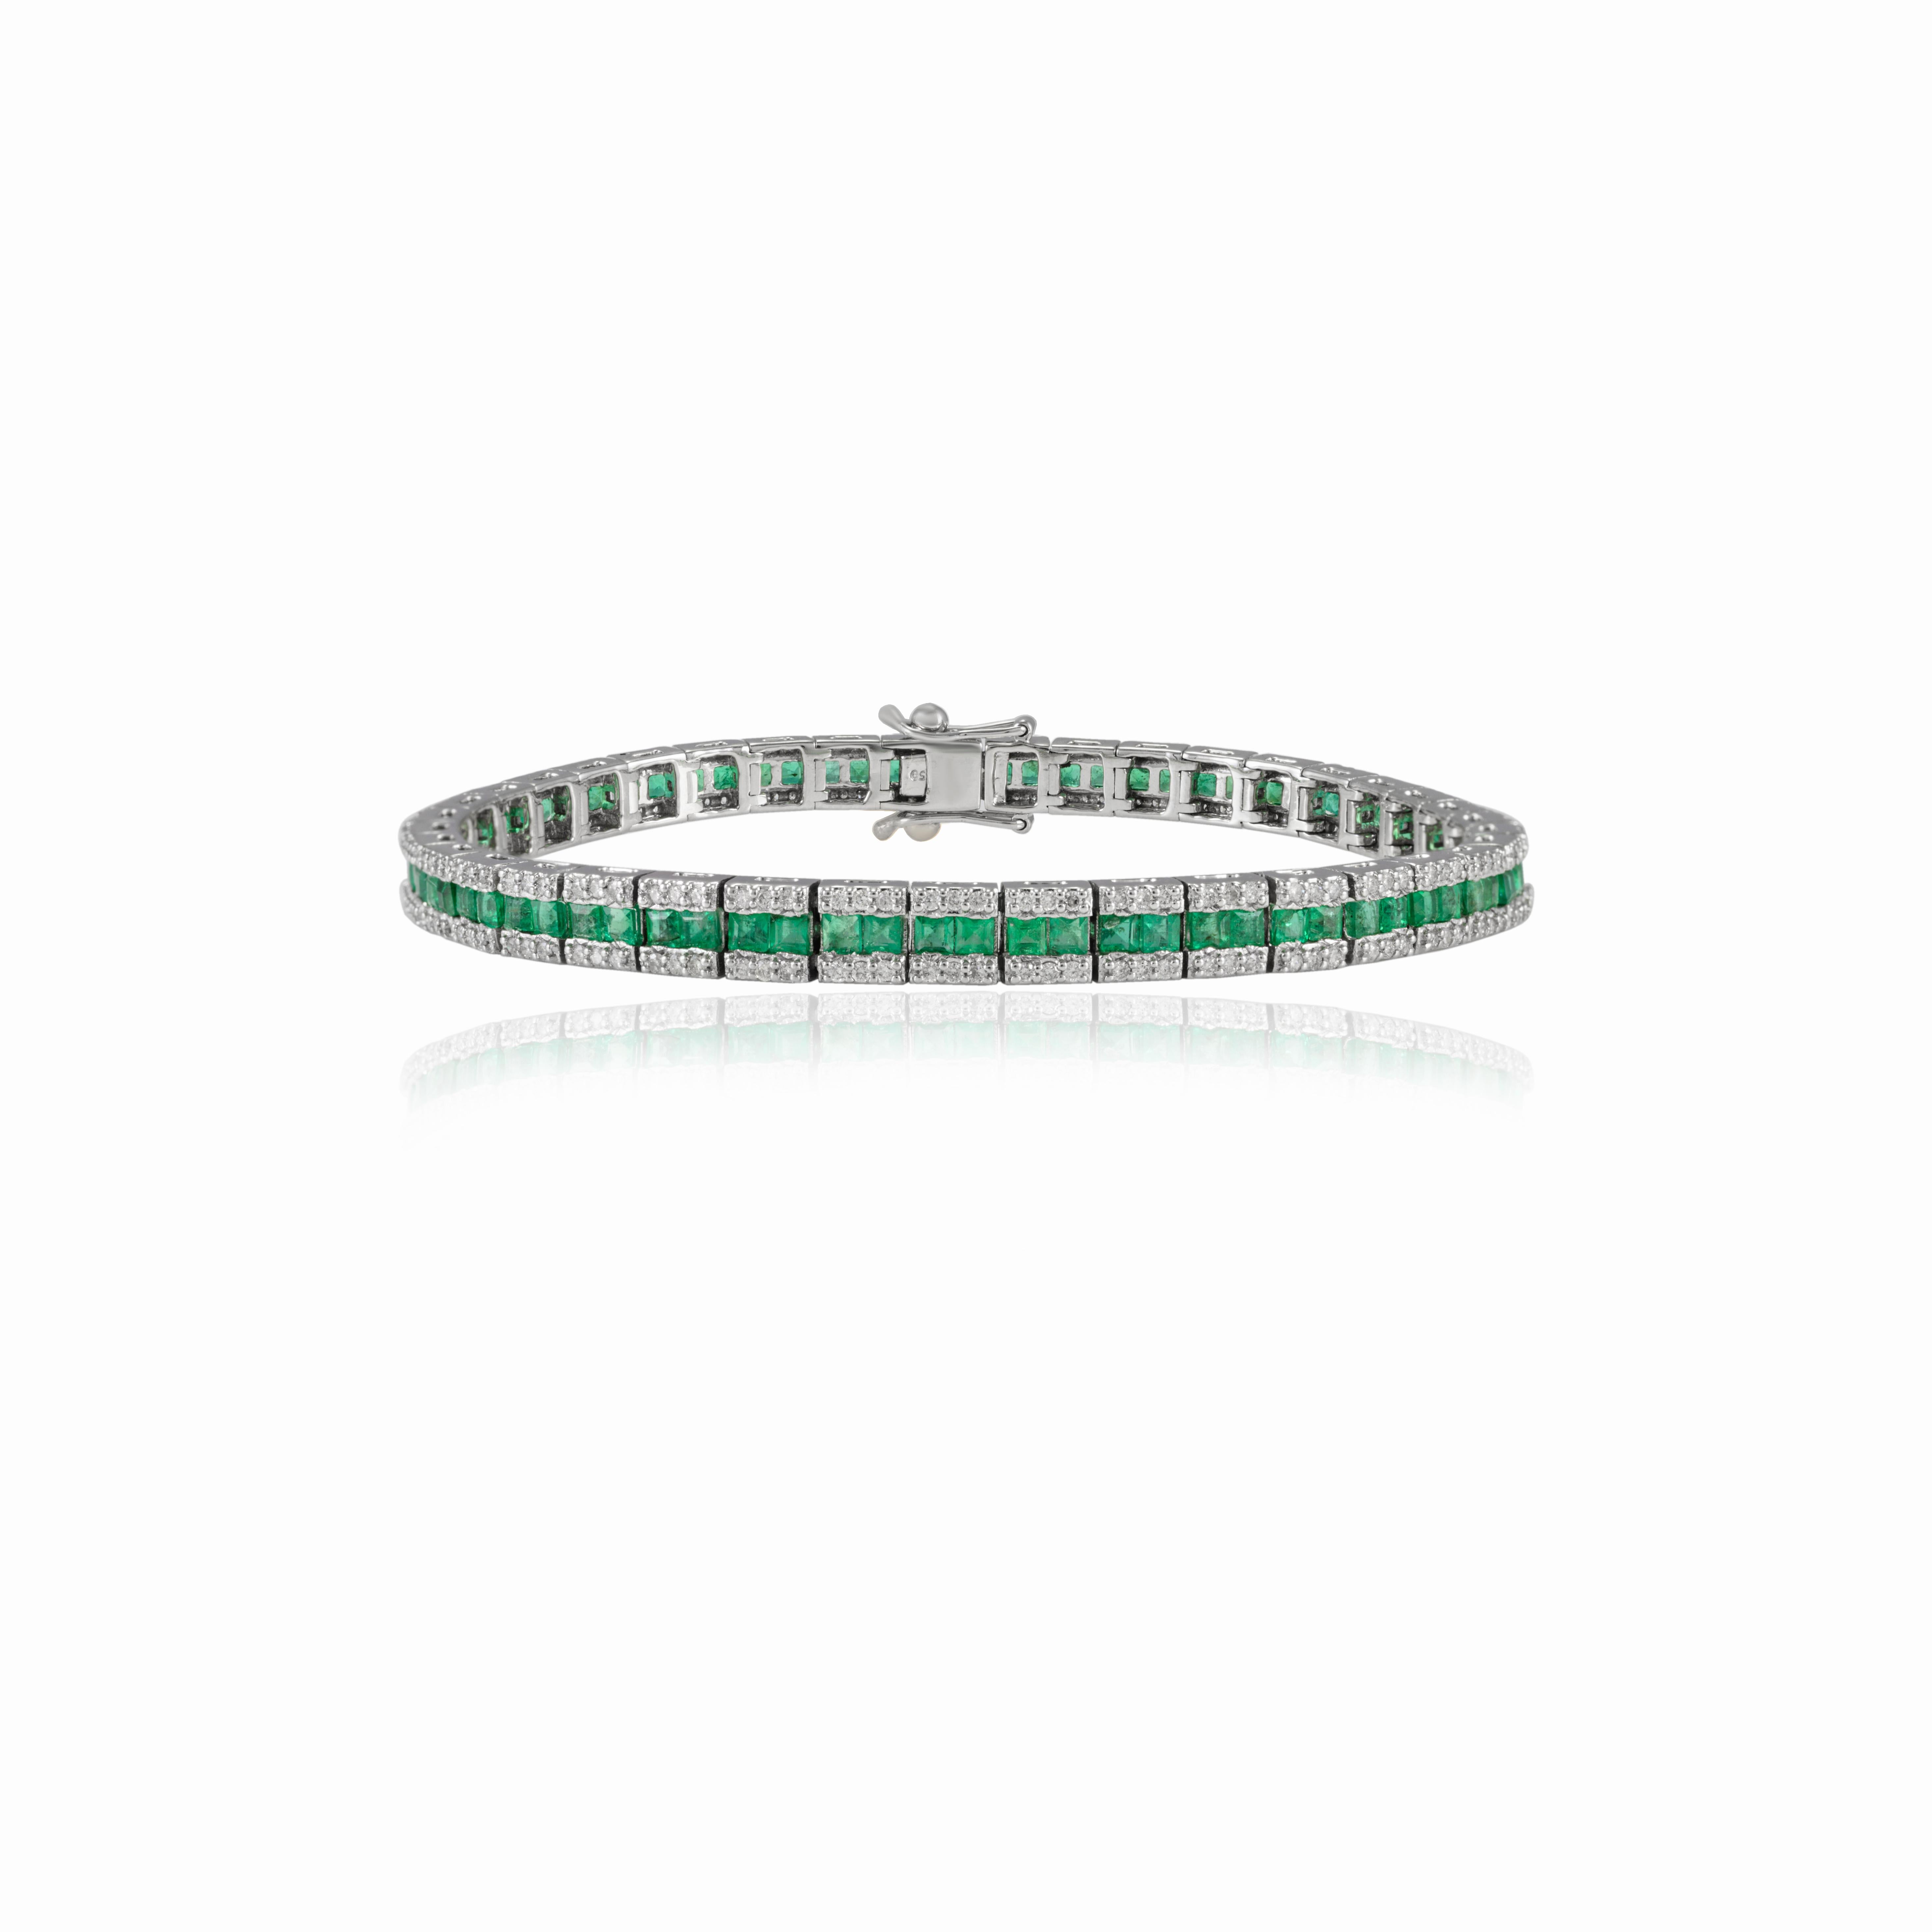 Ce bracelet de tennis de mariage en or 18 carats, certifié émeraude et diamant, met en valeur une émeraude naturelle d'un poids de 3,56 carats et des diamants d'un poids de 1,17 carat, qui brillent à l'infini. Il mesure 7 pouces de long. 
L'émeraude